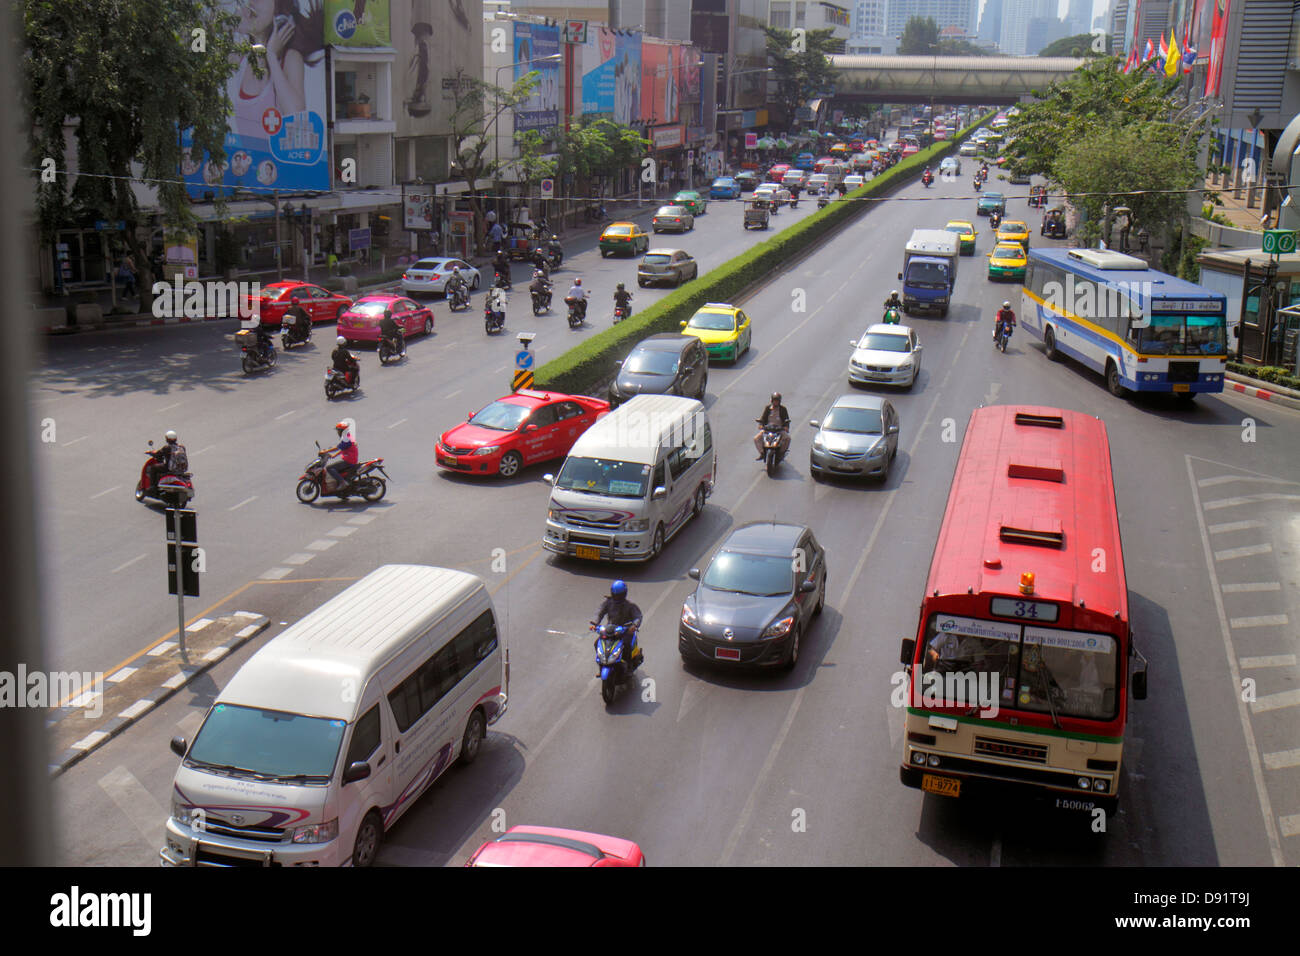 Bangkok Tailandia, tailandés, Pathum Wan, Phaya Thai Road, tráfico, taxis, taxi, taxis, taxis, motocicletas, motonetas, autobuses, Skywalk, vista, por encima de la cabeza, aéreo vi Foto de stock